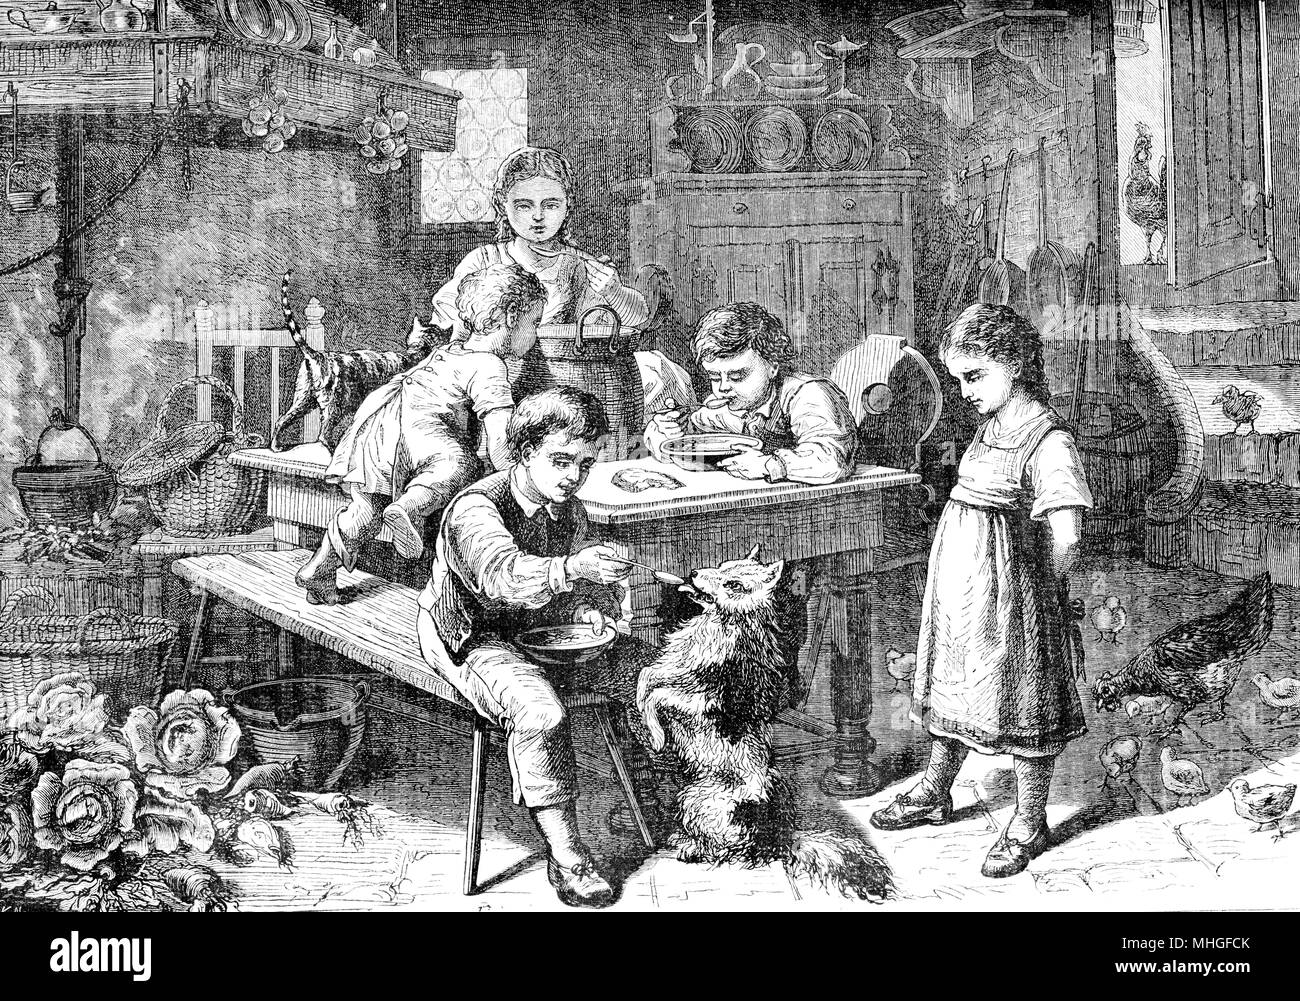 Impresión vintage de la hora del almuerzo en la hacienda: boy, las niñas y los niños comen juntos en la cocina y alimentar un perro mascota Foto de stock